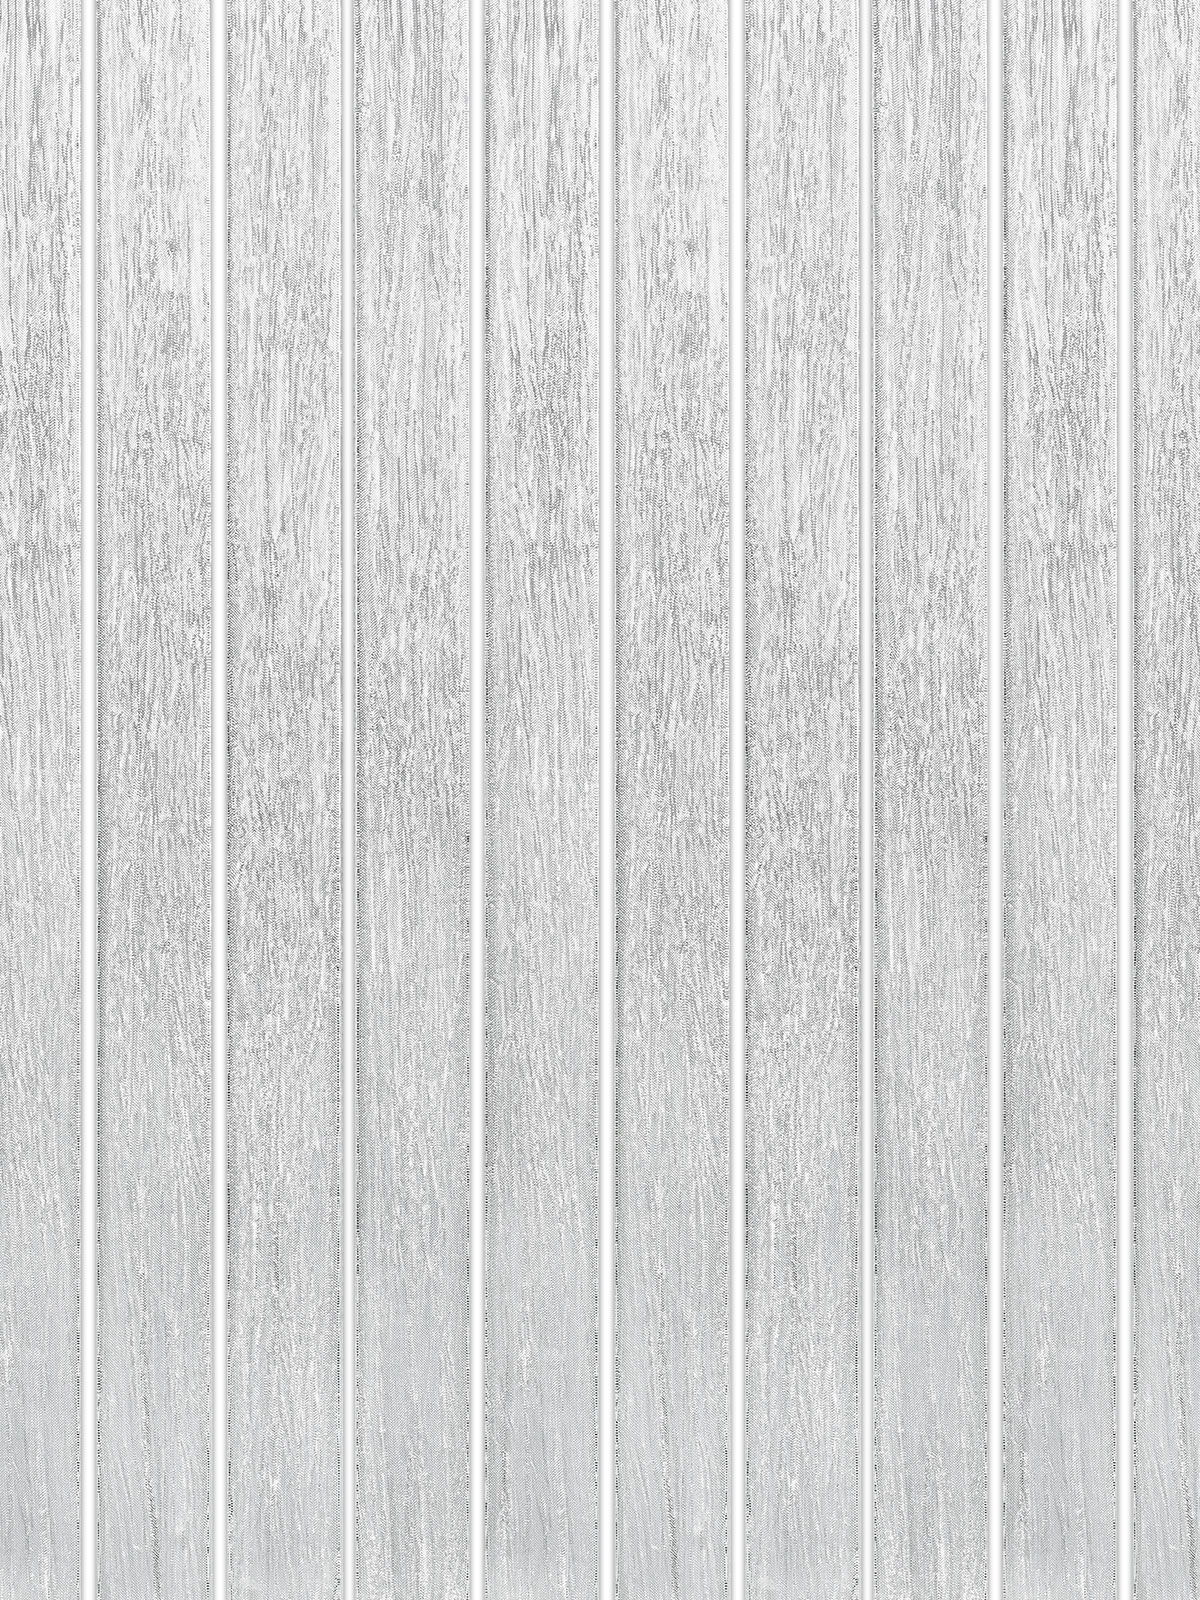 Shimmery White Glass Modern Backsplash Tile BA8022 8